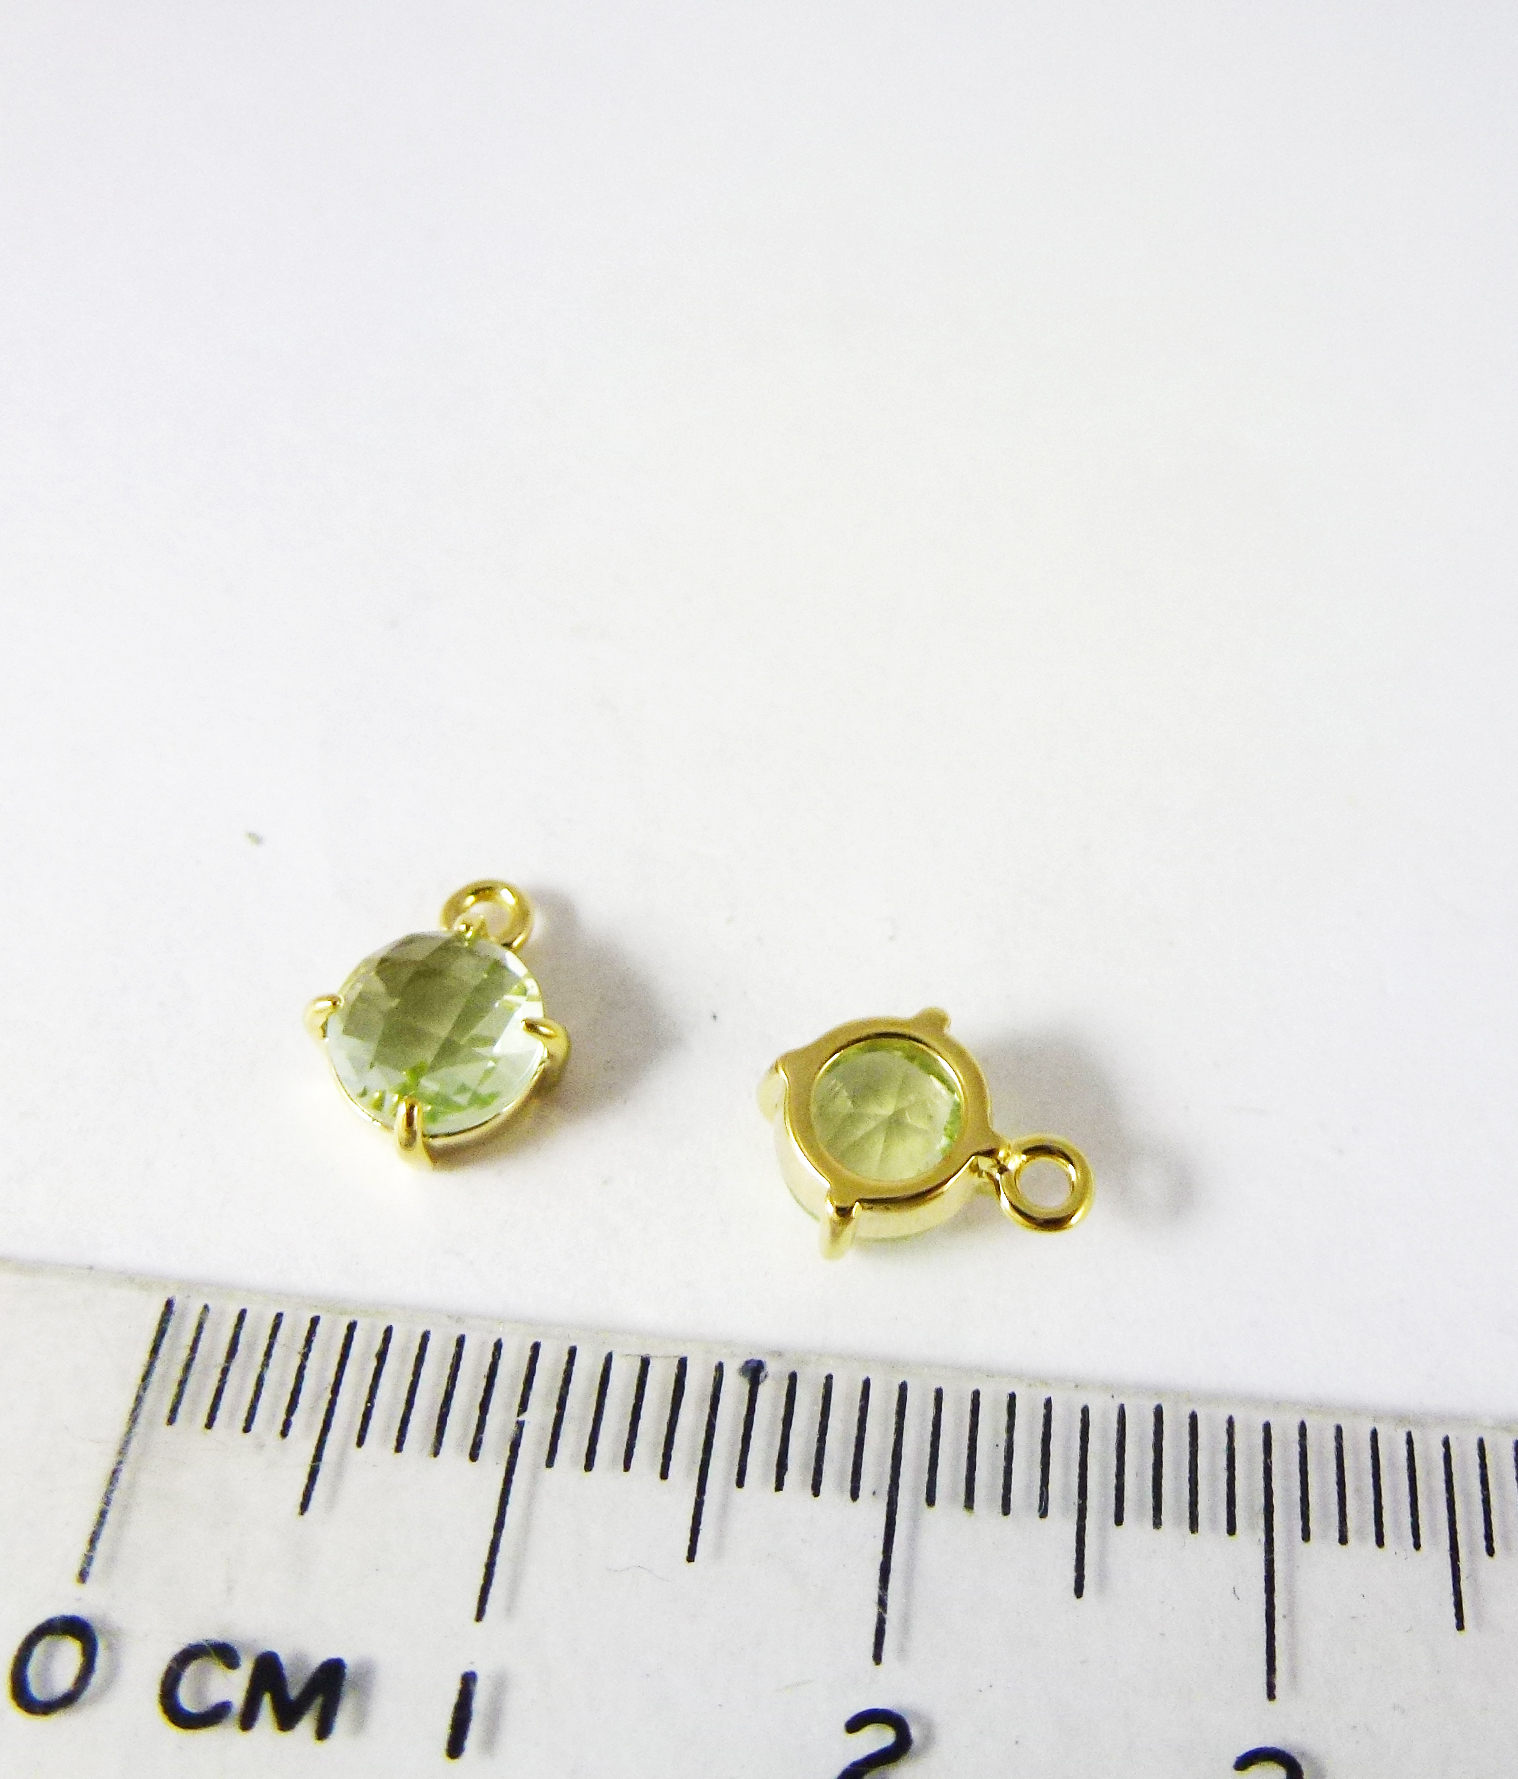 6mm銅鍍金色單孔四爪圓形誕生石-八月橄欖石